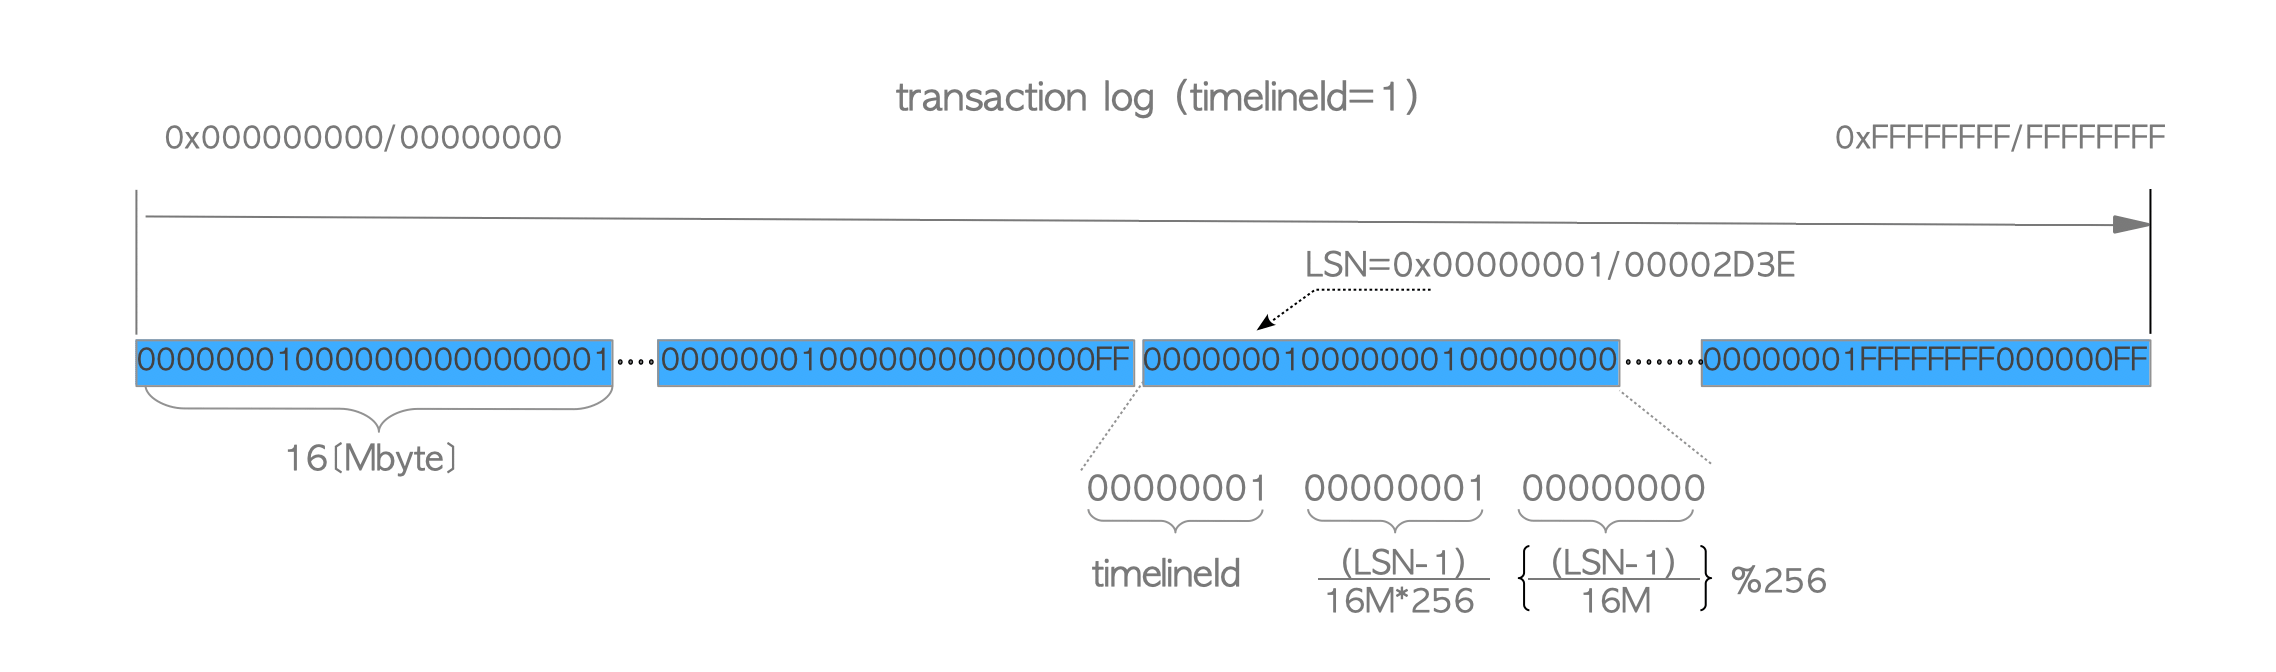 Transaction log and WAL segment files